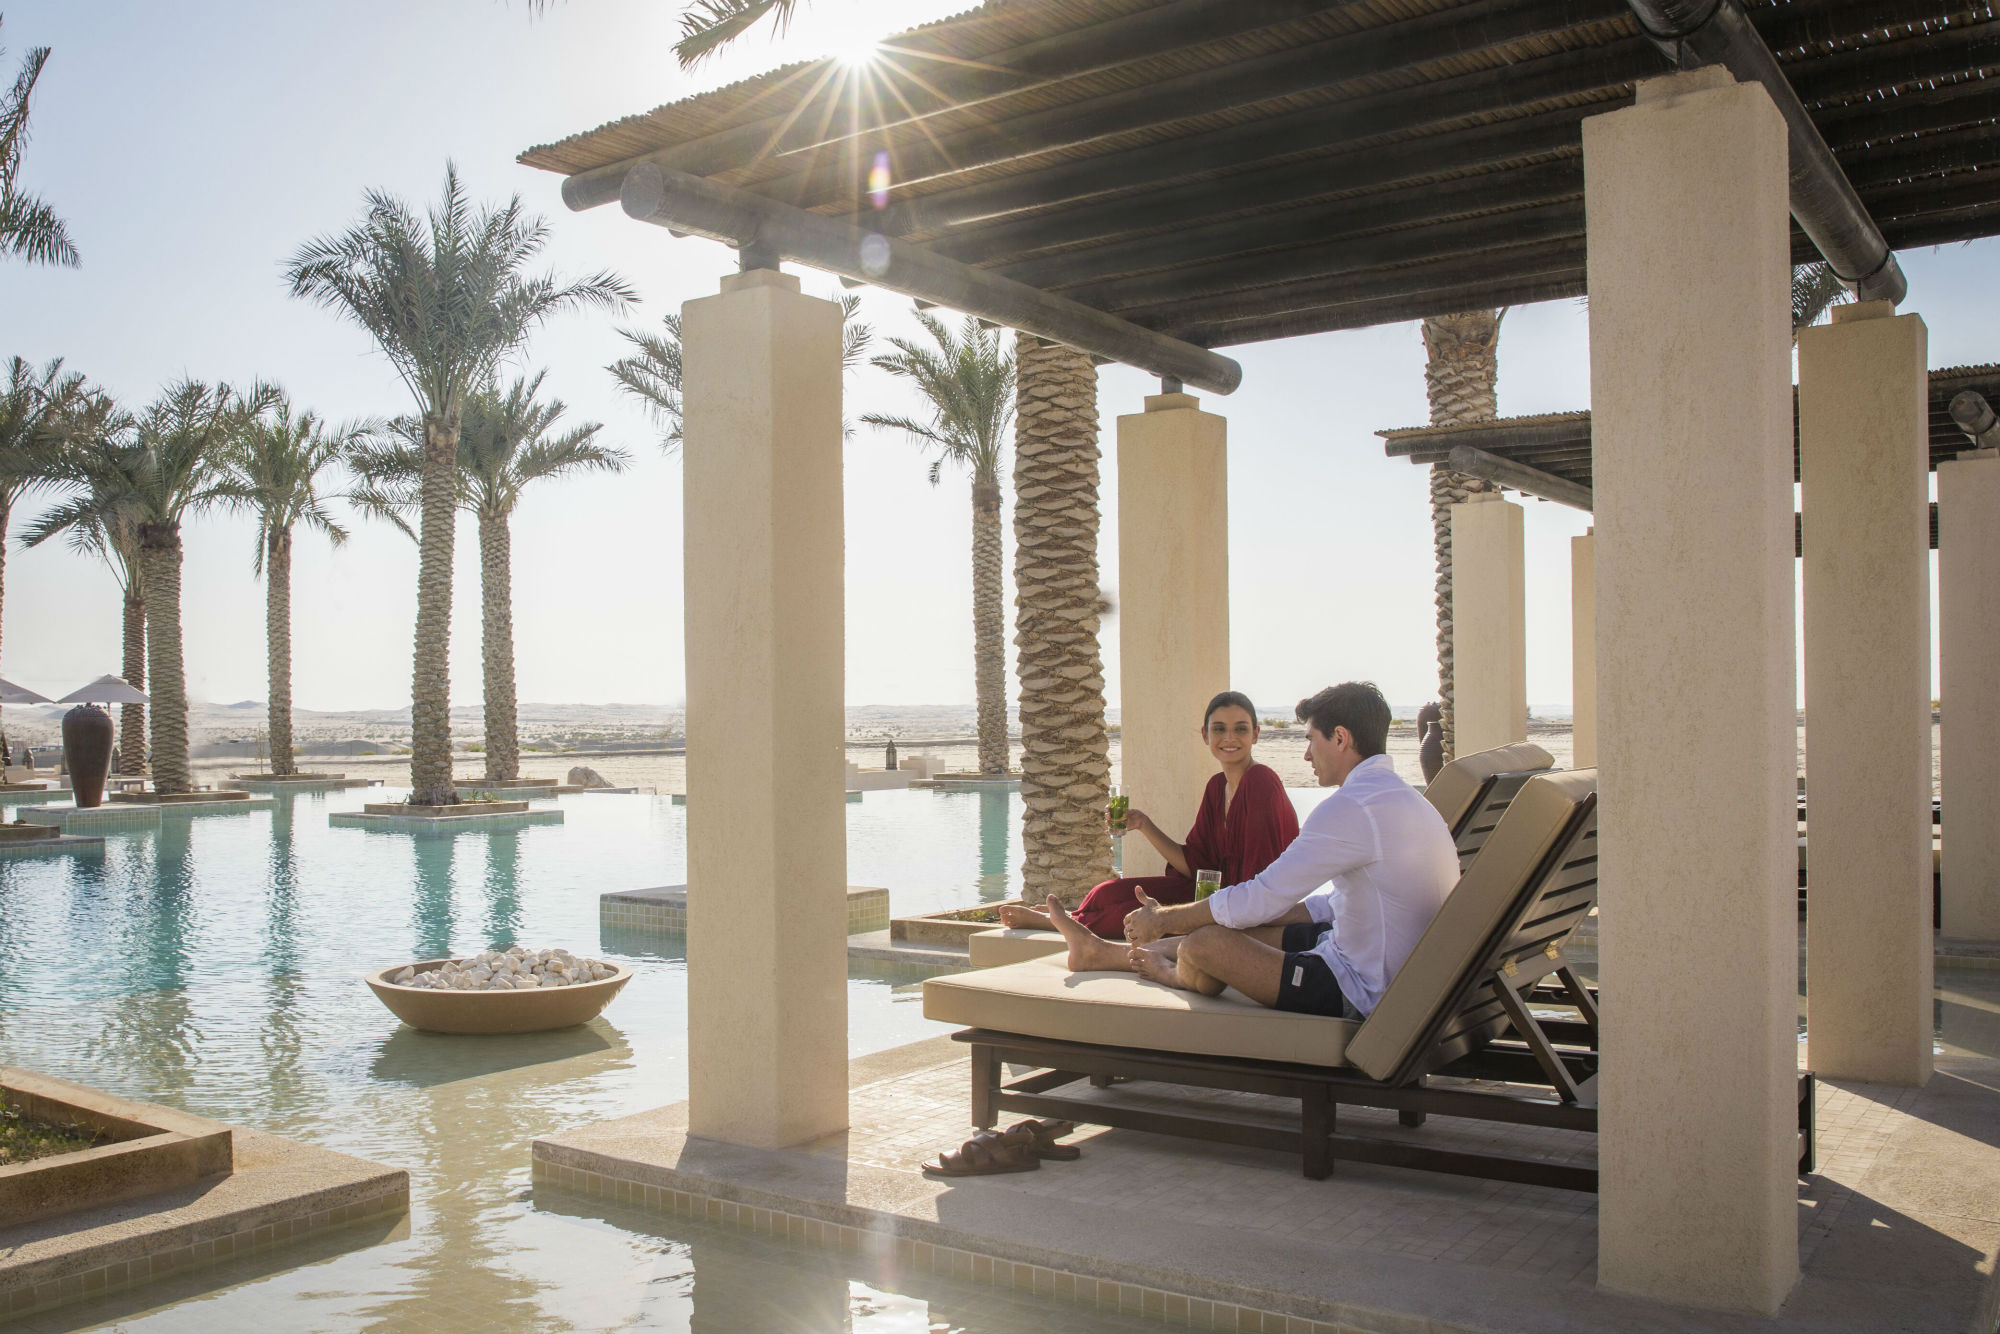 Aande Reviews Jumeirah Al Wathba Desert Resort And Spa In Abu Dhabi Aande Magazine